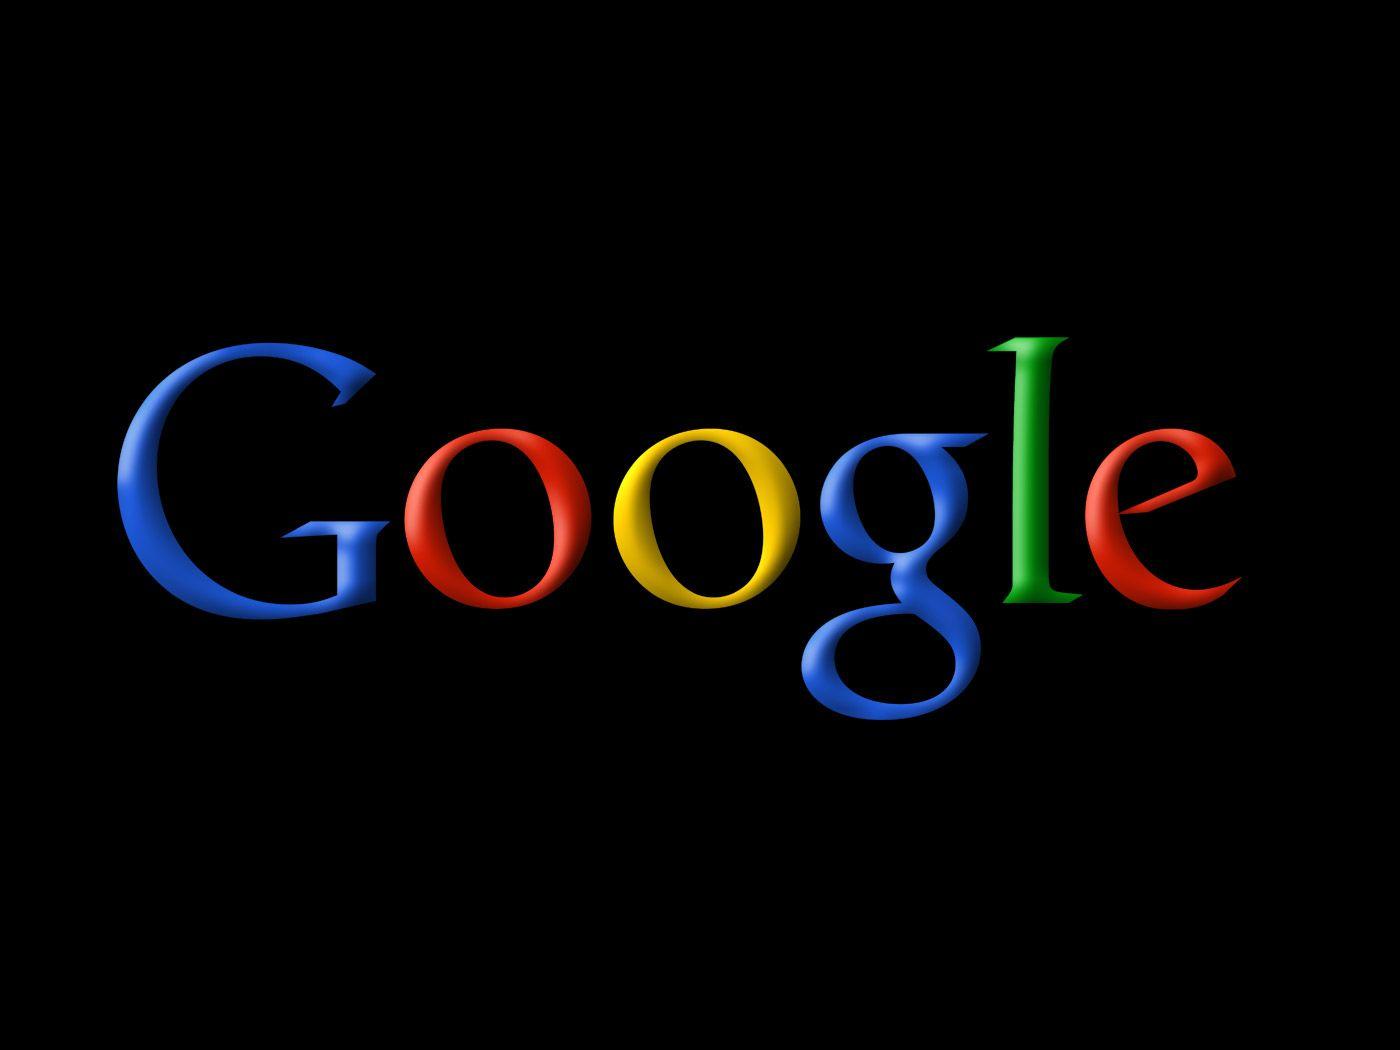 Google Logo trên nền đen sẽ khiến công việc của bạn trở nên thú vị hơn khiến khi mở web browser. Hình nền rực rỡ này sẽ mang lại những cảm xúc tươi mới và tràn đầy năng lượng cho ngày mới của bạn.